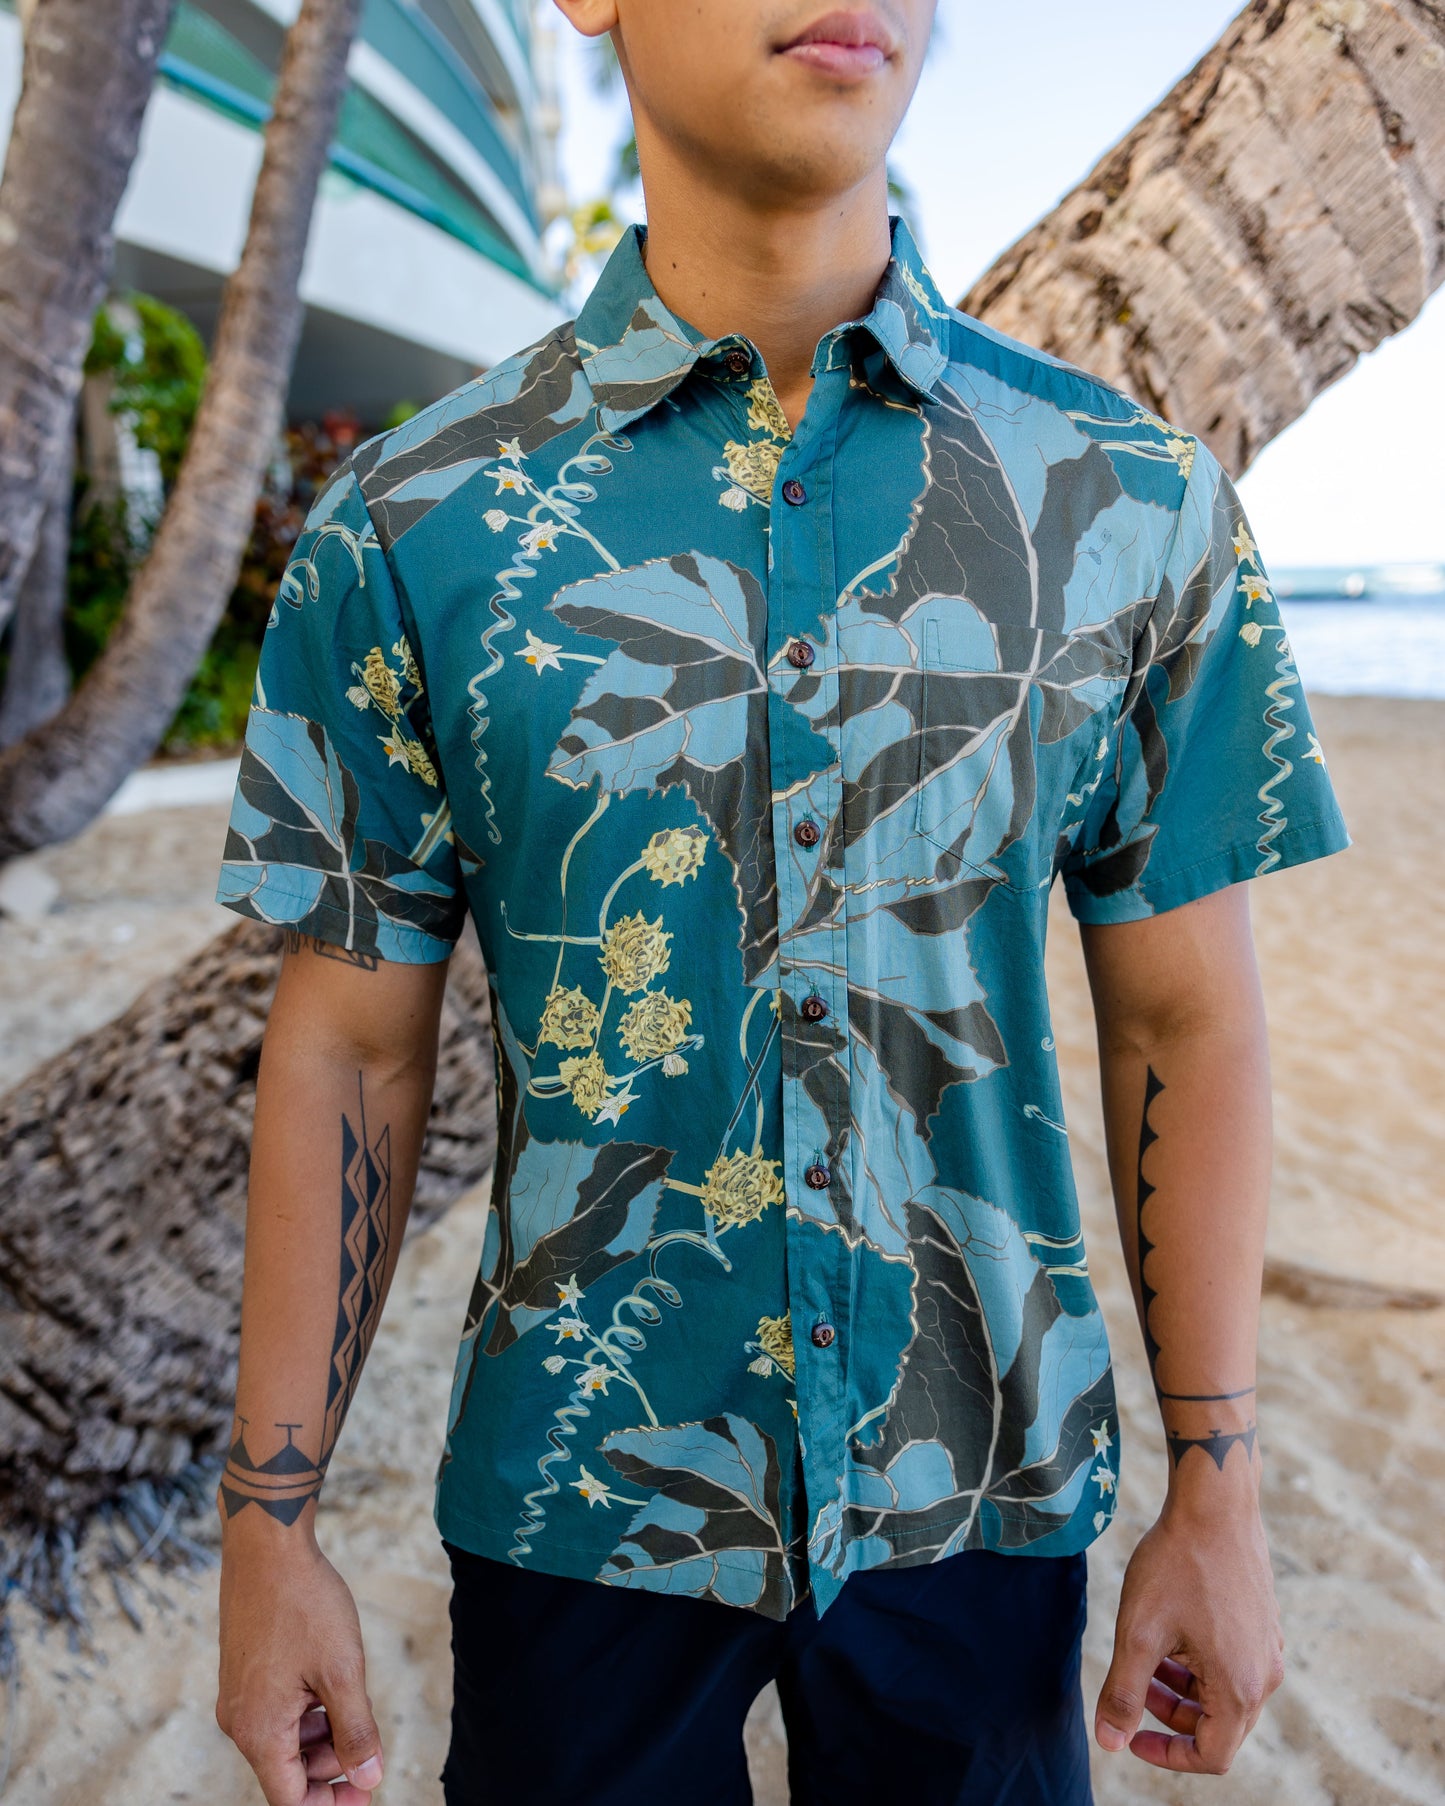 Kūpala Teal Aloha Shirt